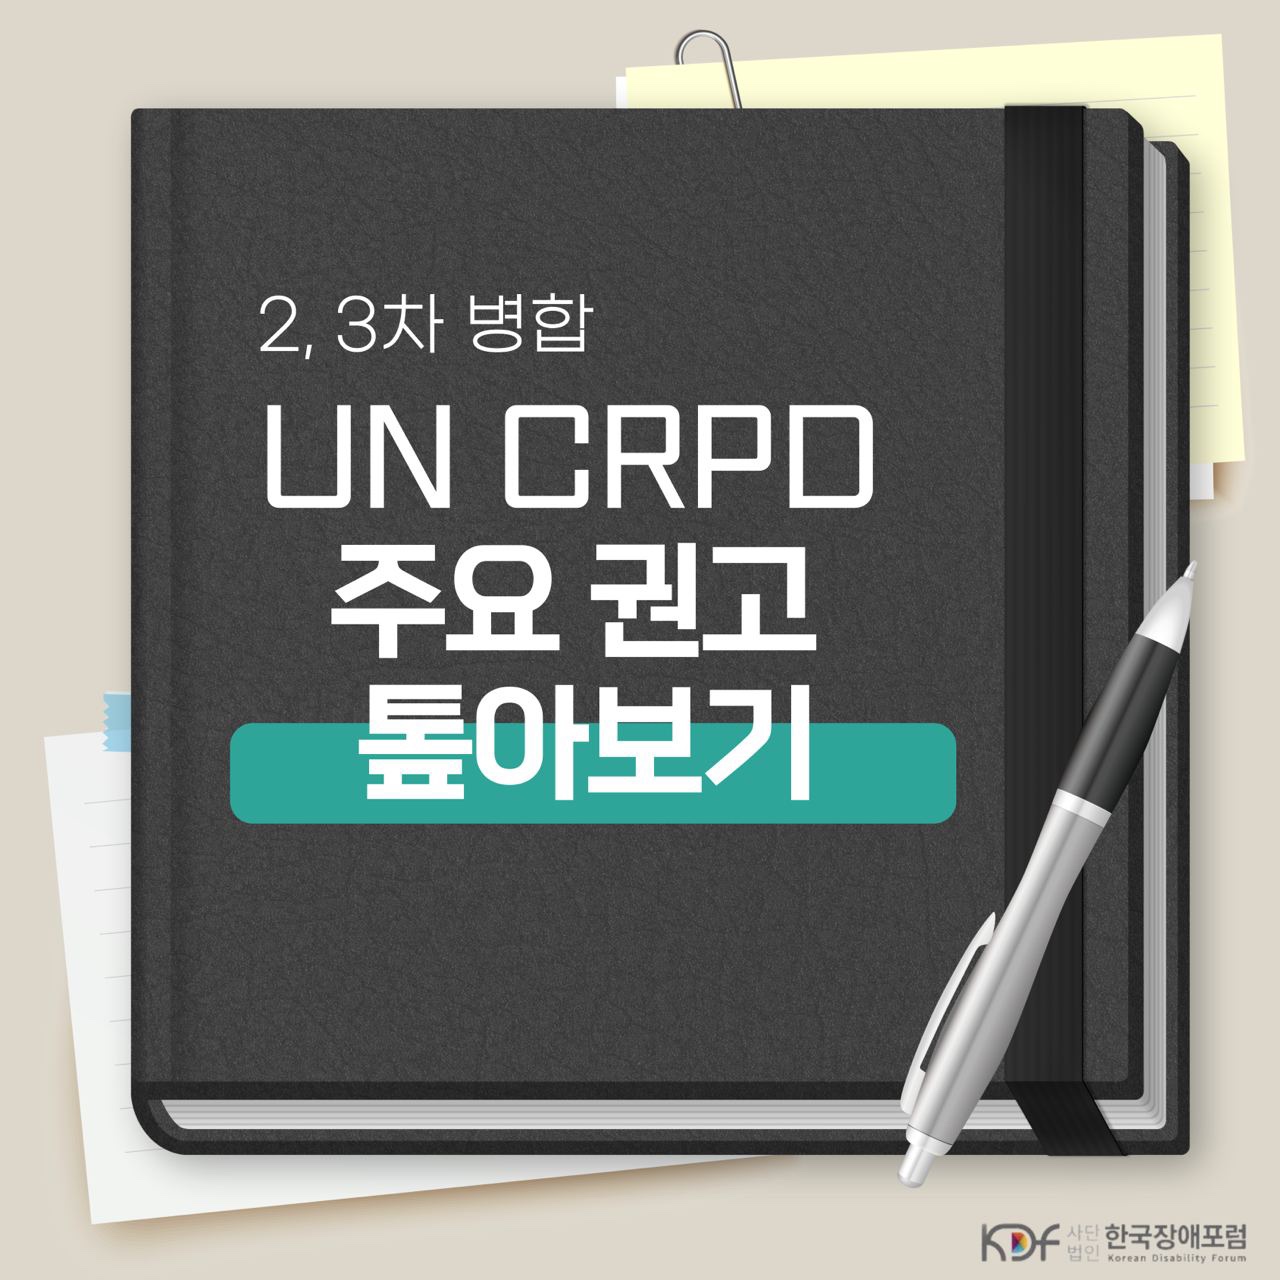 2, 3차 병합 UN CRPD 주요 권고 톺아보기이미지